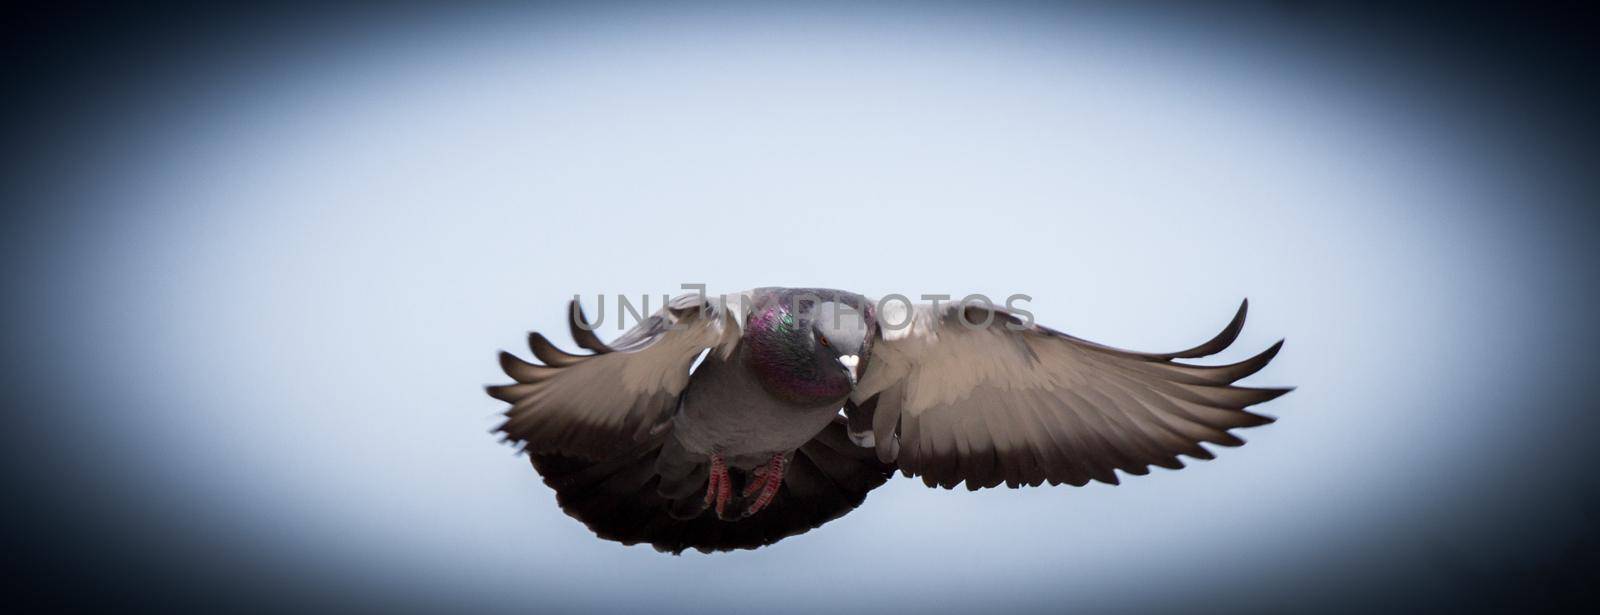 Single pigeon flying in  air  by berkay